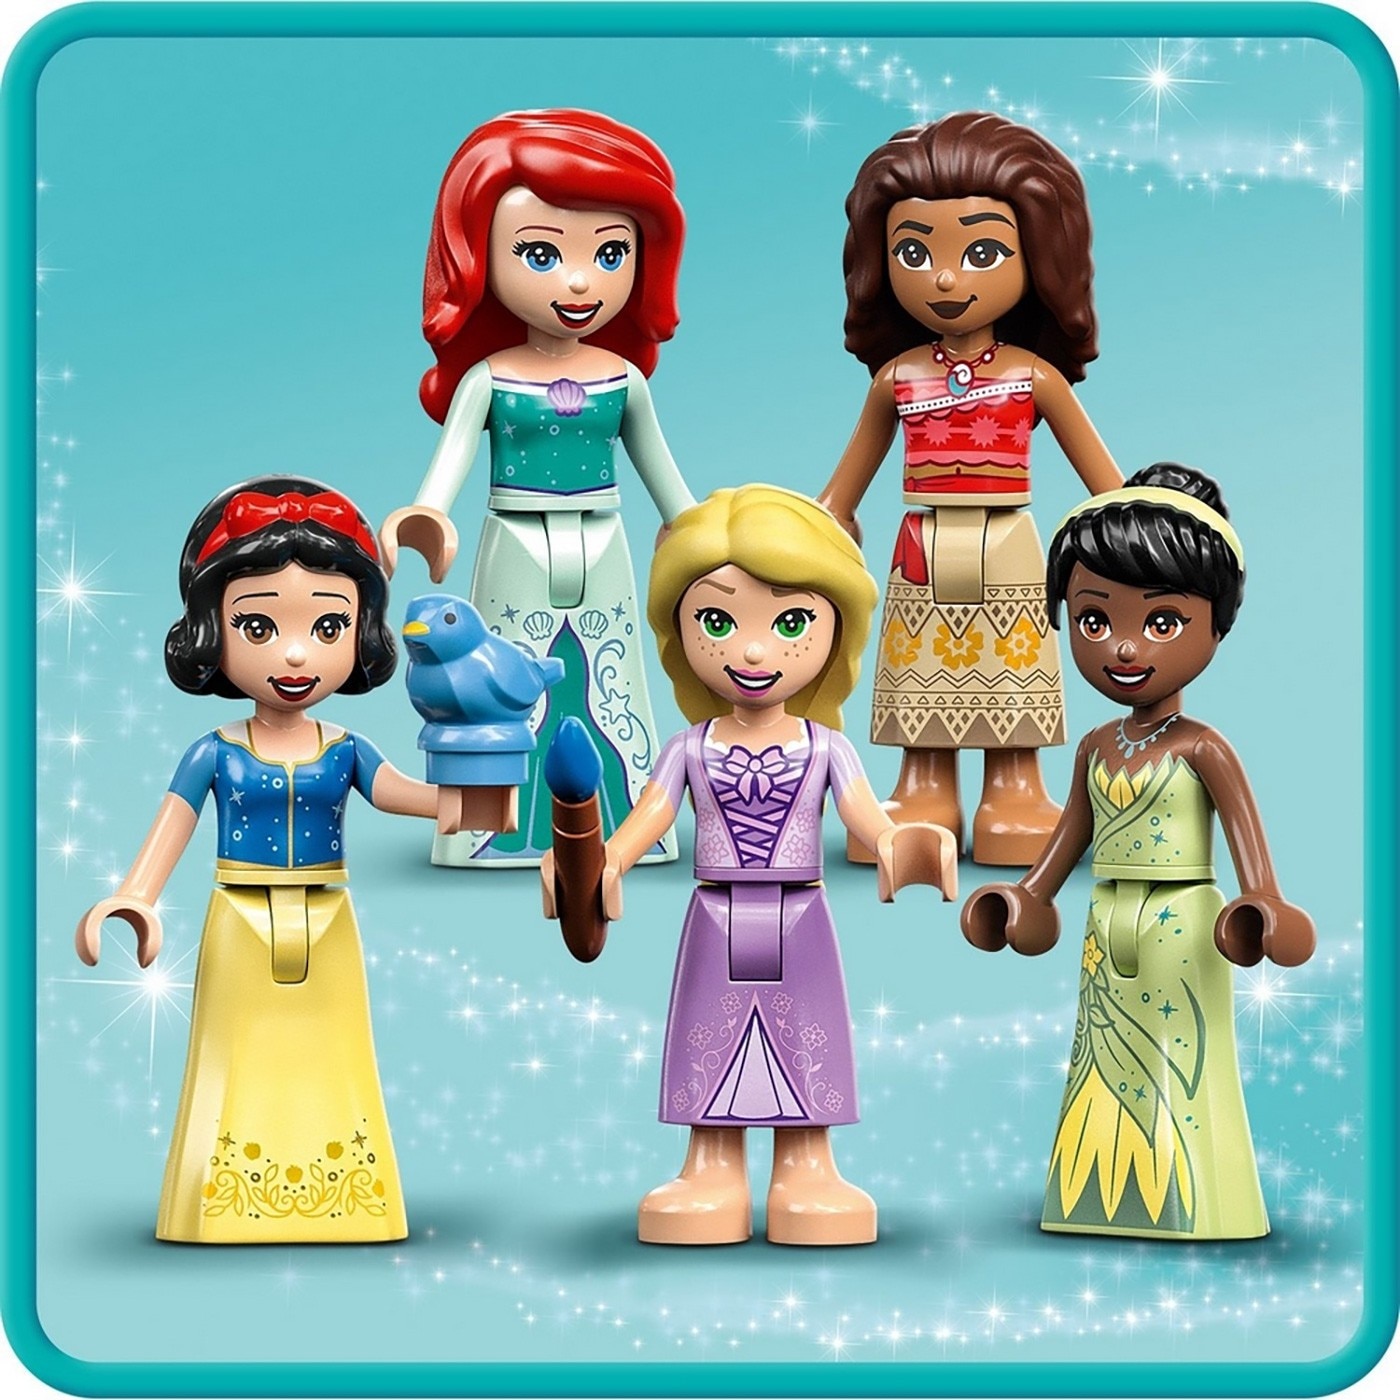 LEGO 迪士尼公主系列 城堡公主，含 5 個 DISNEY 公主人偶，使用 LEGO 應用程式，可同時拼砌並預覽模型，城堡共四層樓、五間臥室，城堡可開啟並上鎖。